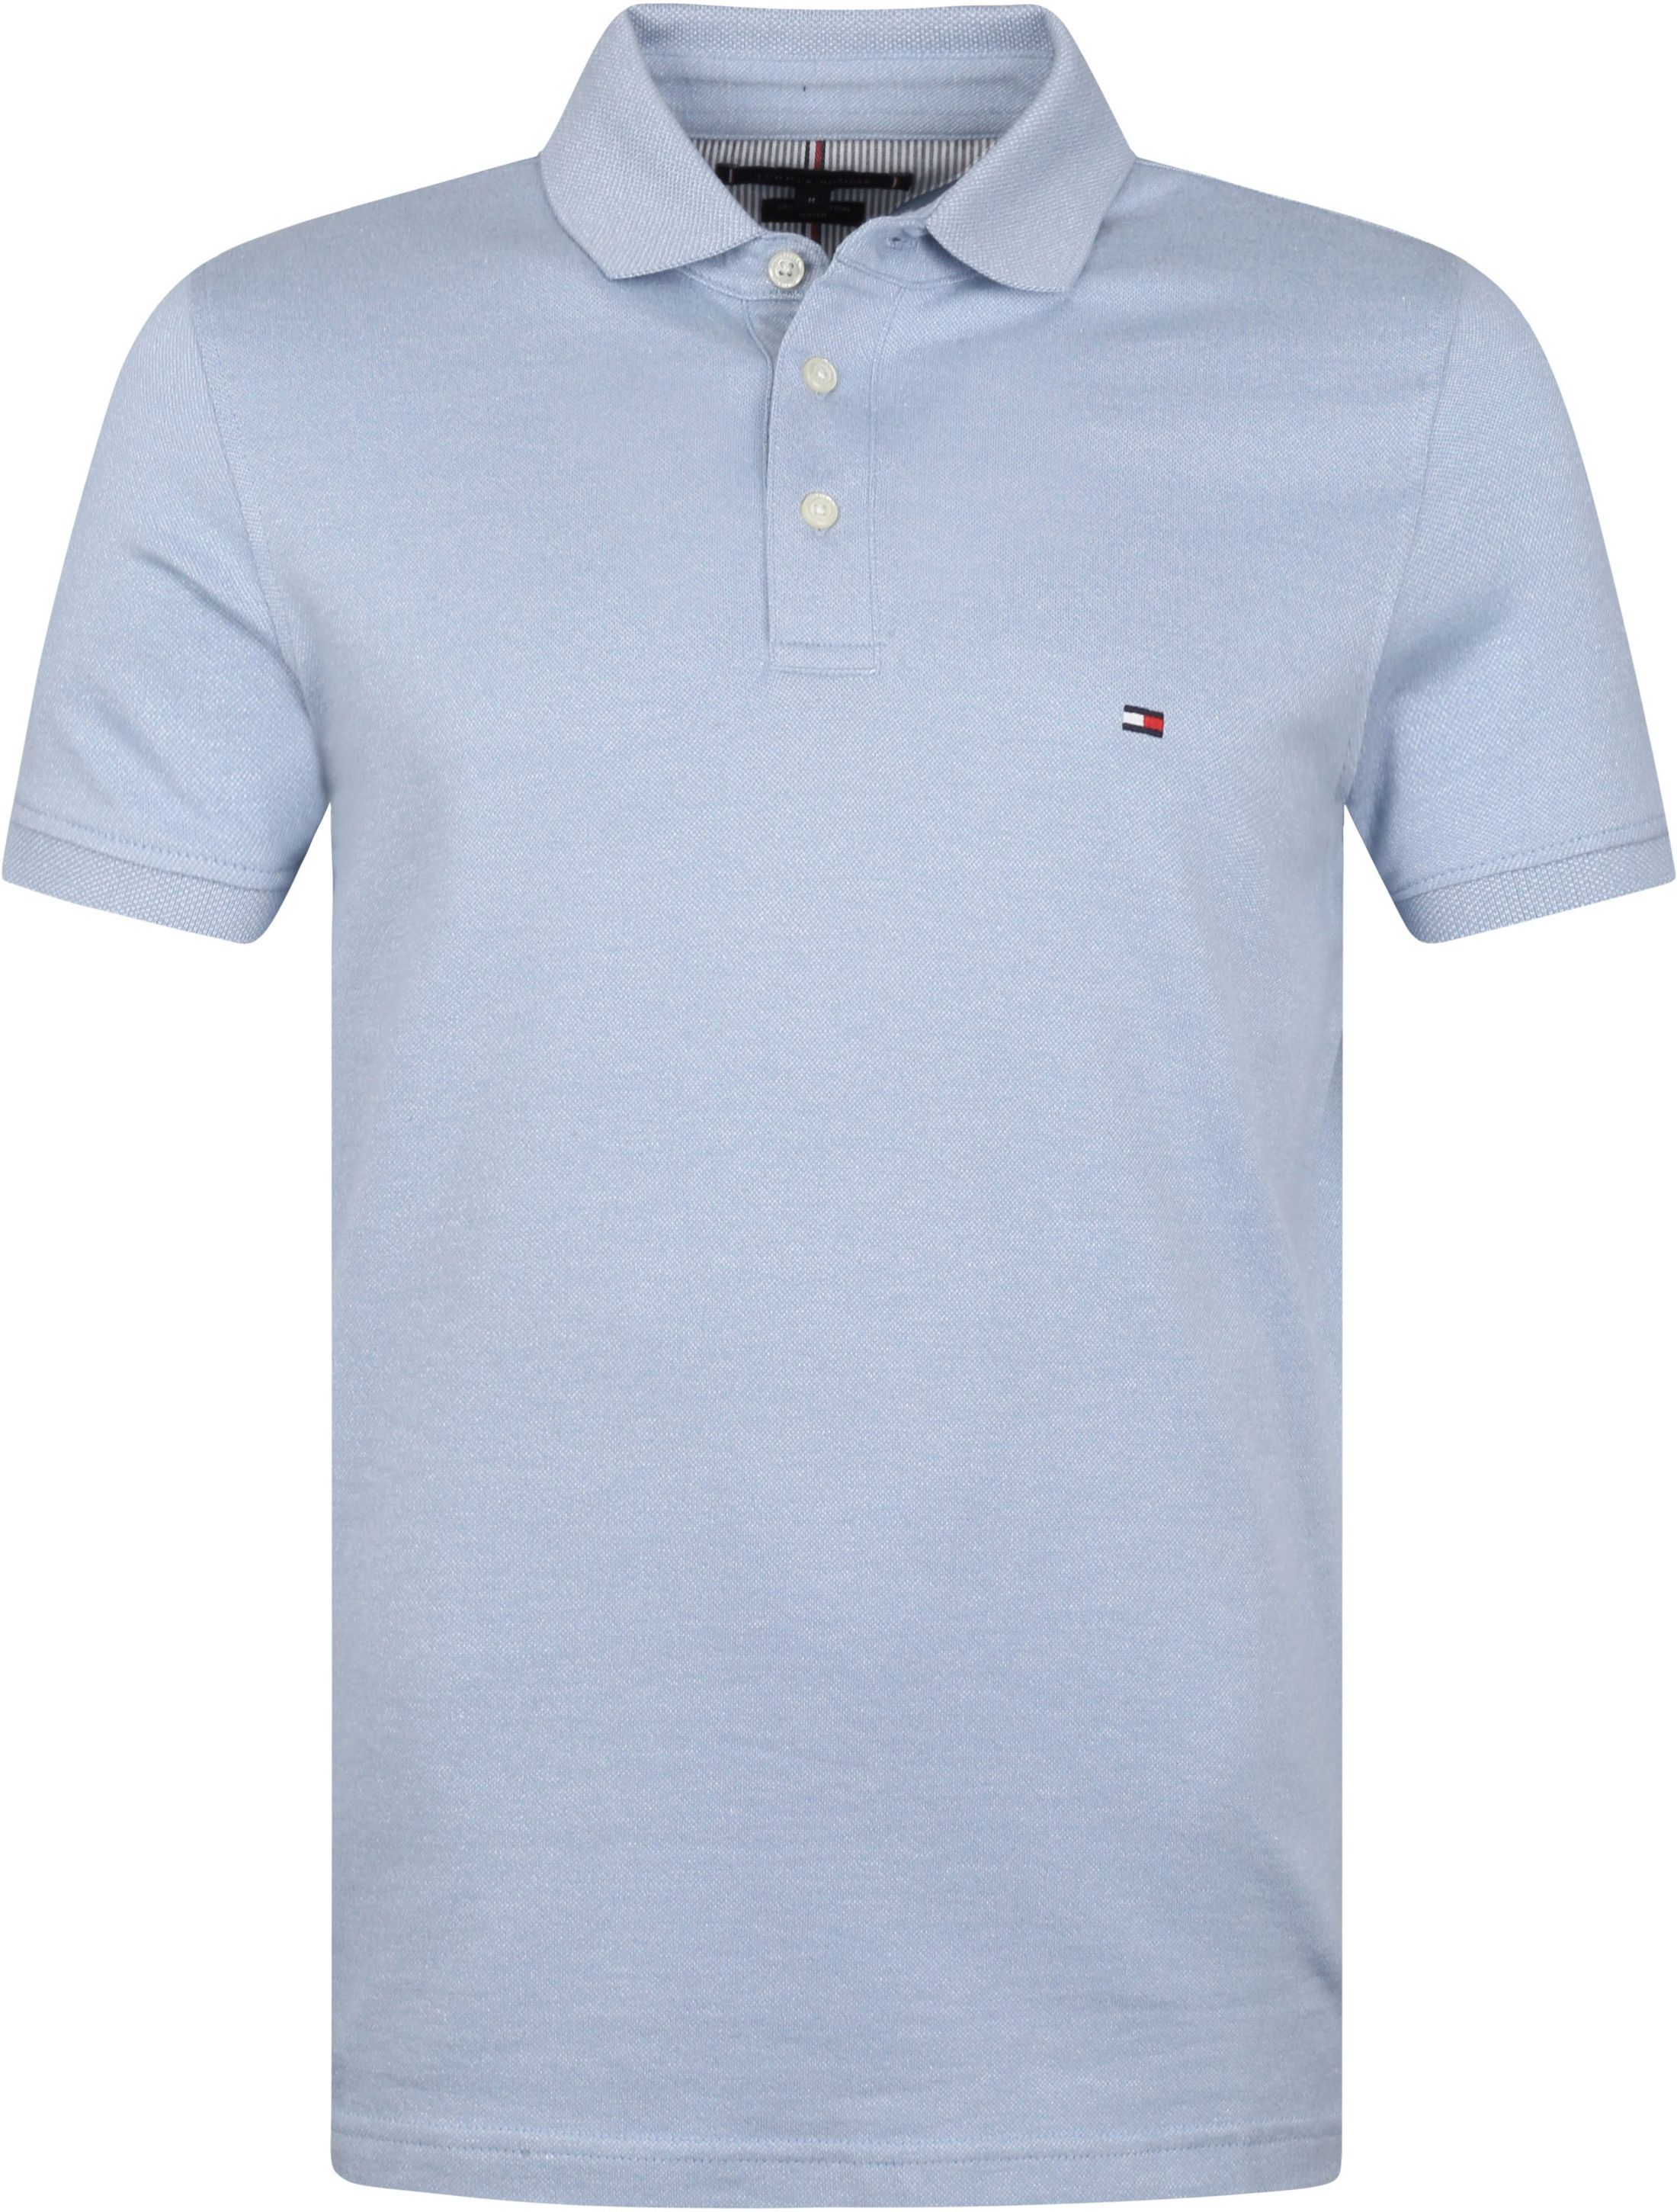 Tommy Hilfiger Polo Shirt Light Blue size L